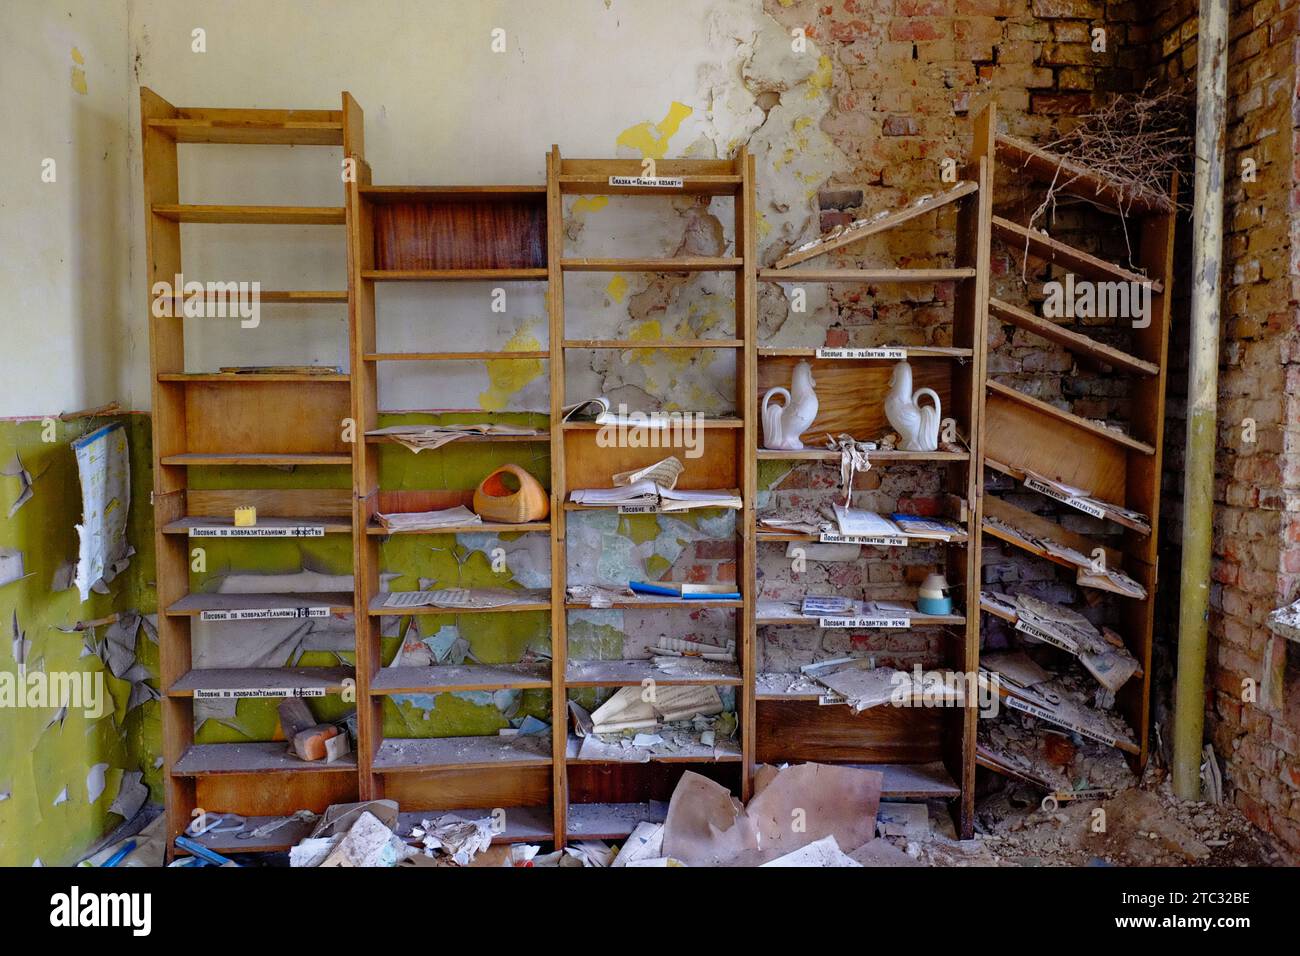 Una stanza abbandonata con una libreria di legno piena di vecchi libri e oggetti, e un muro di mattoni in rovina. Vecchi scaffali per le carte in una stanza abbandonata. Foto Stock